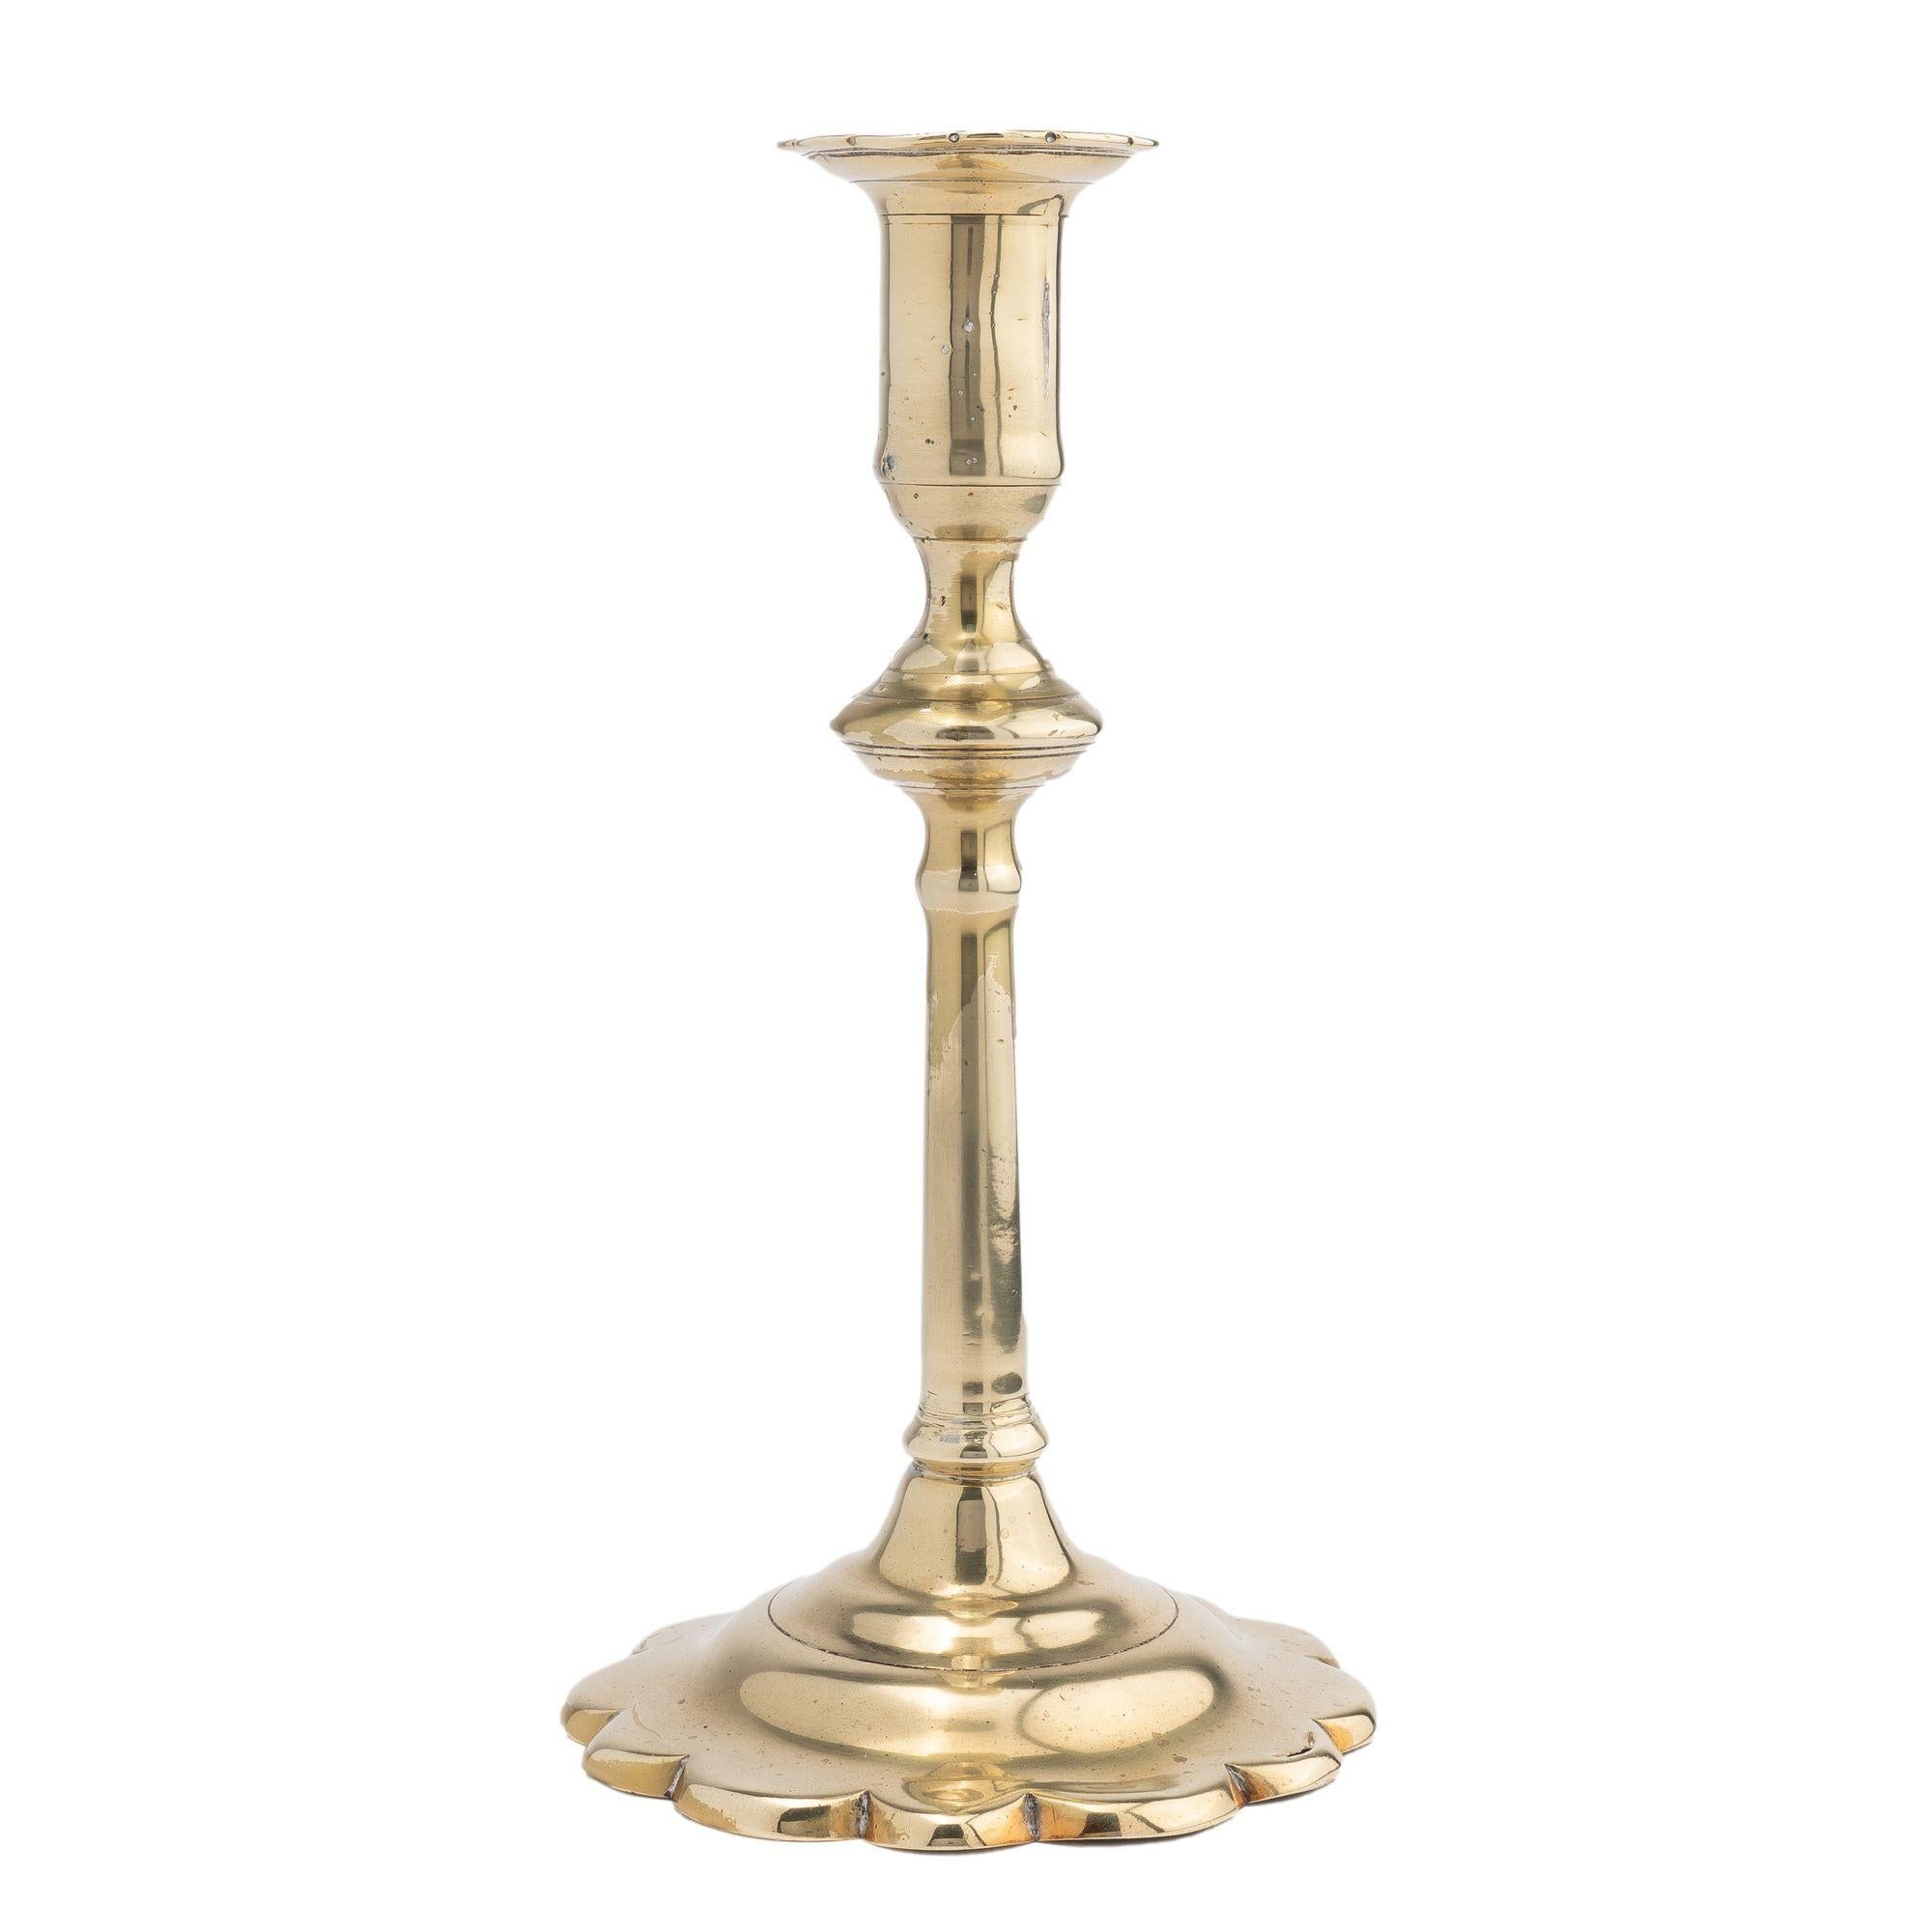 Englischer georgianischer Queen-Anne-Kerzenleuchter aus Messingguss. Der Schaft des Kerzenhalters hat einen Knopf direkt unter dem Kerzenbecher mit einer gerollten Wölbung. Der Kerzenbecher sitzt auf einem sich leicht verjüngenden zylindrischen